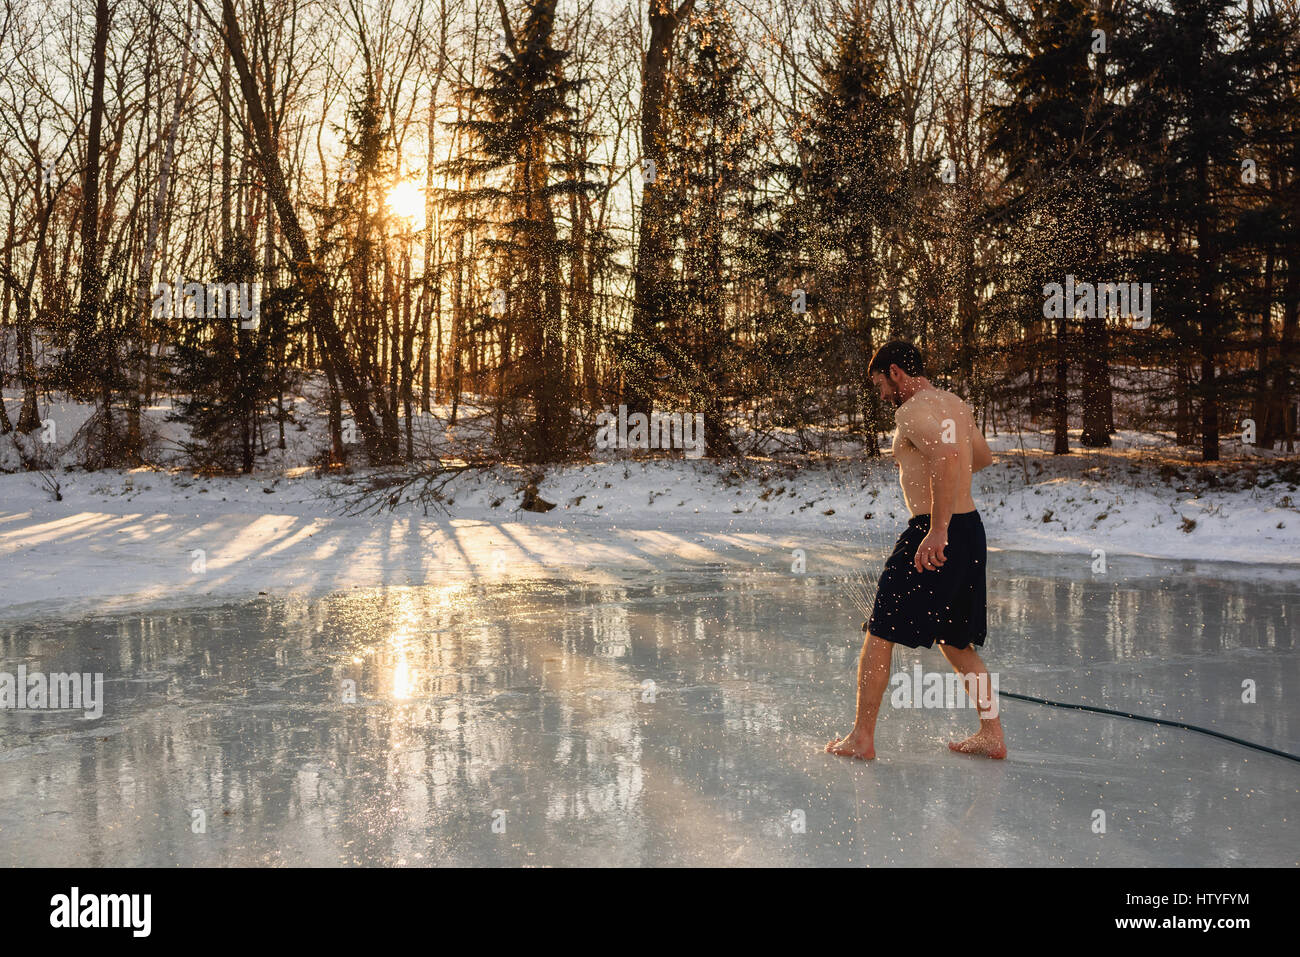 L'homme en maillot de bain qui traverse le lac gelé sprinkleur Banque D'Images